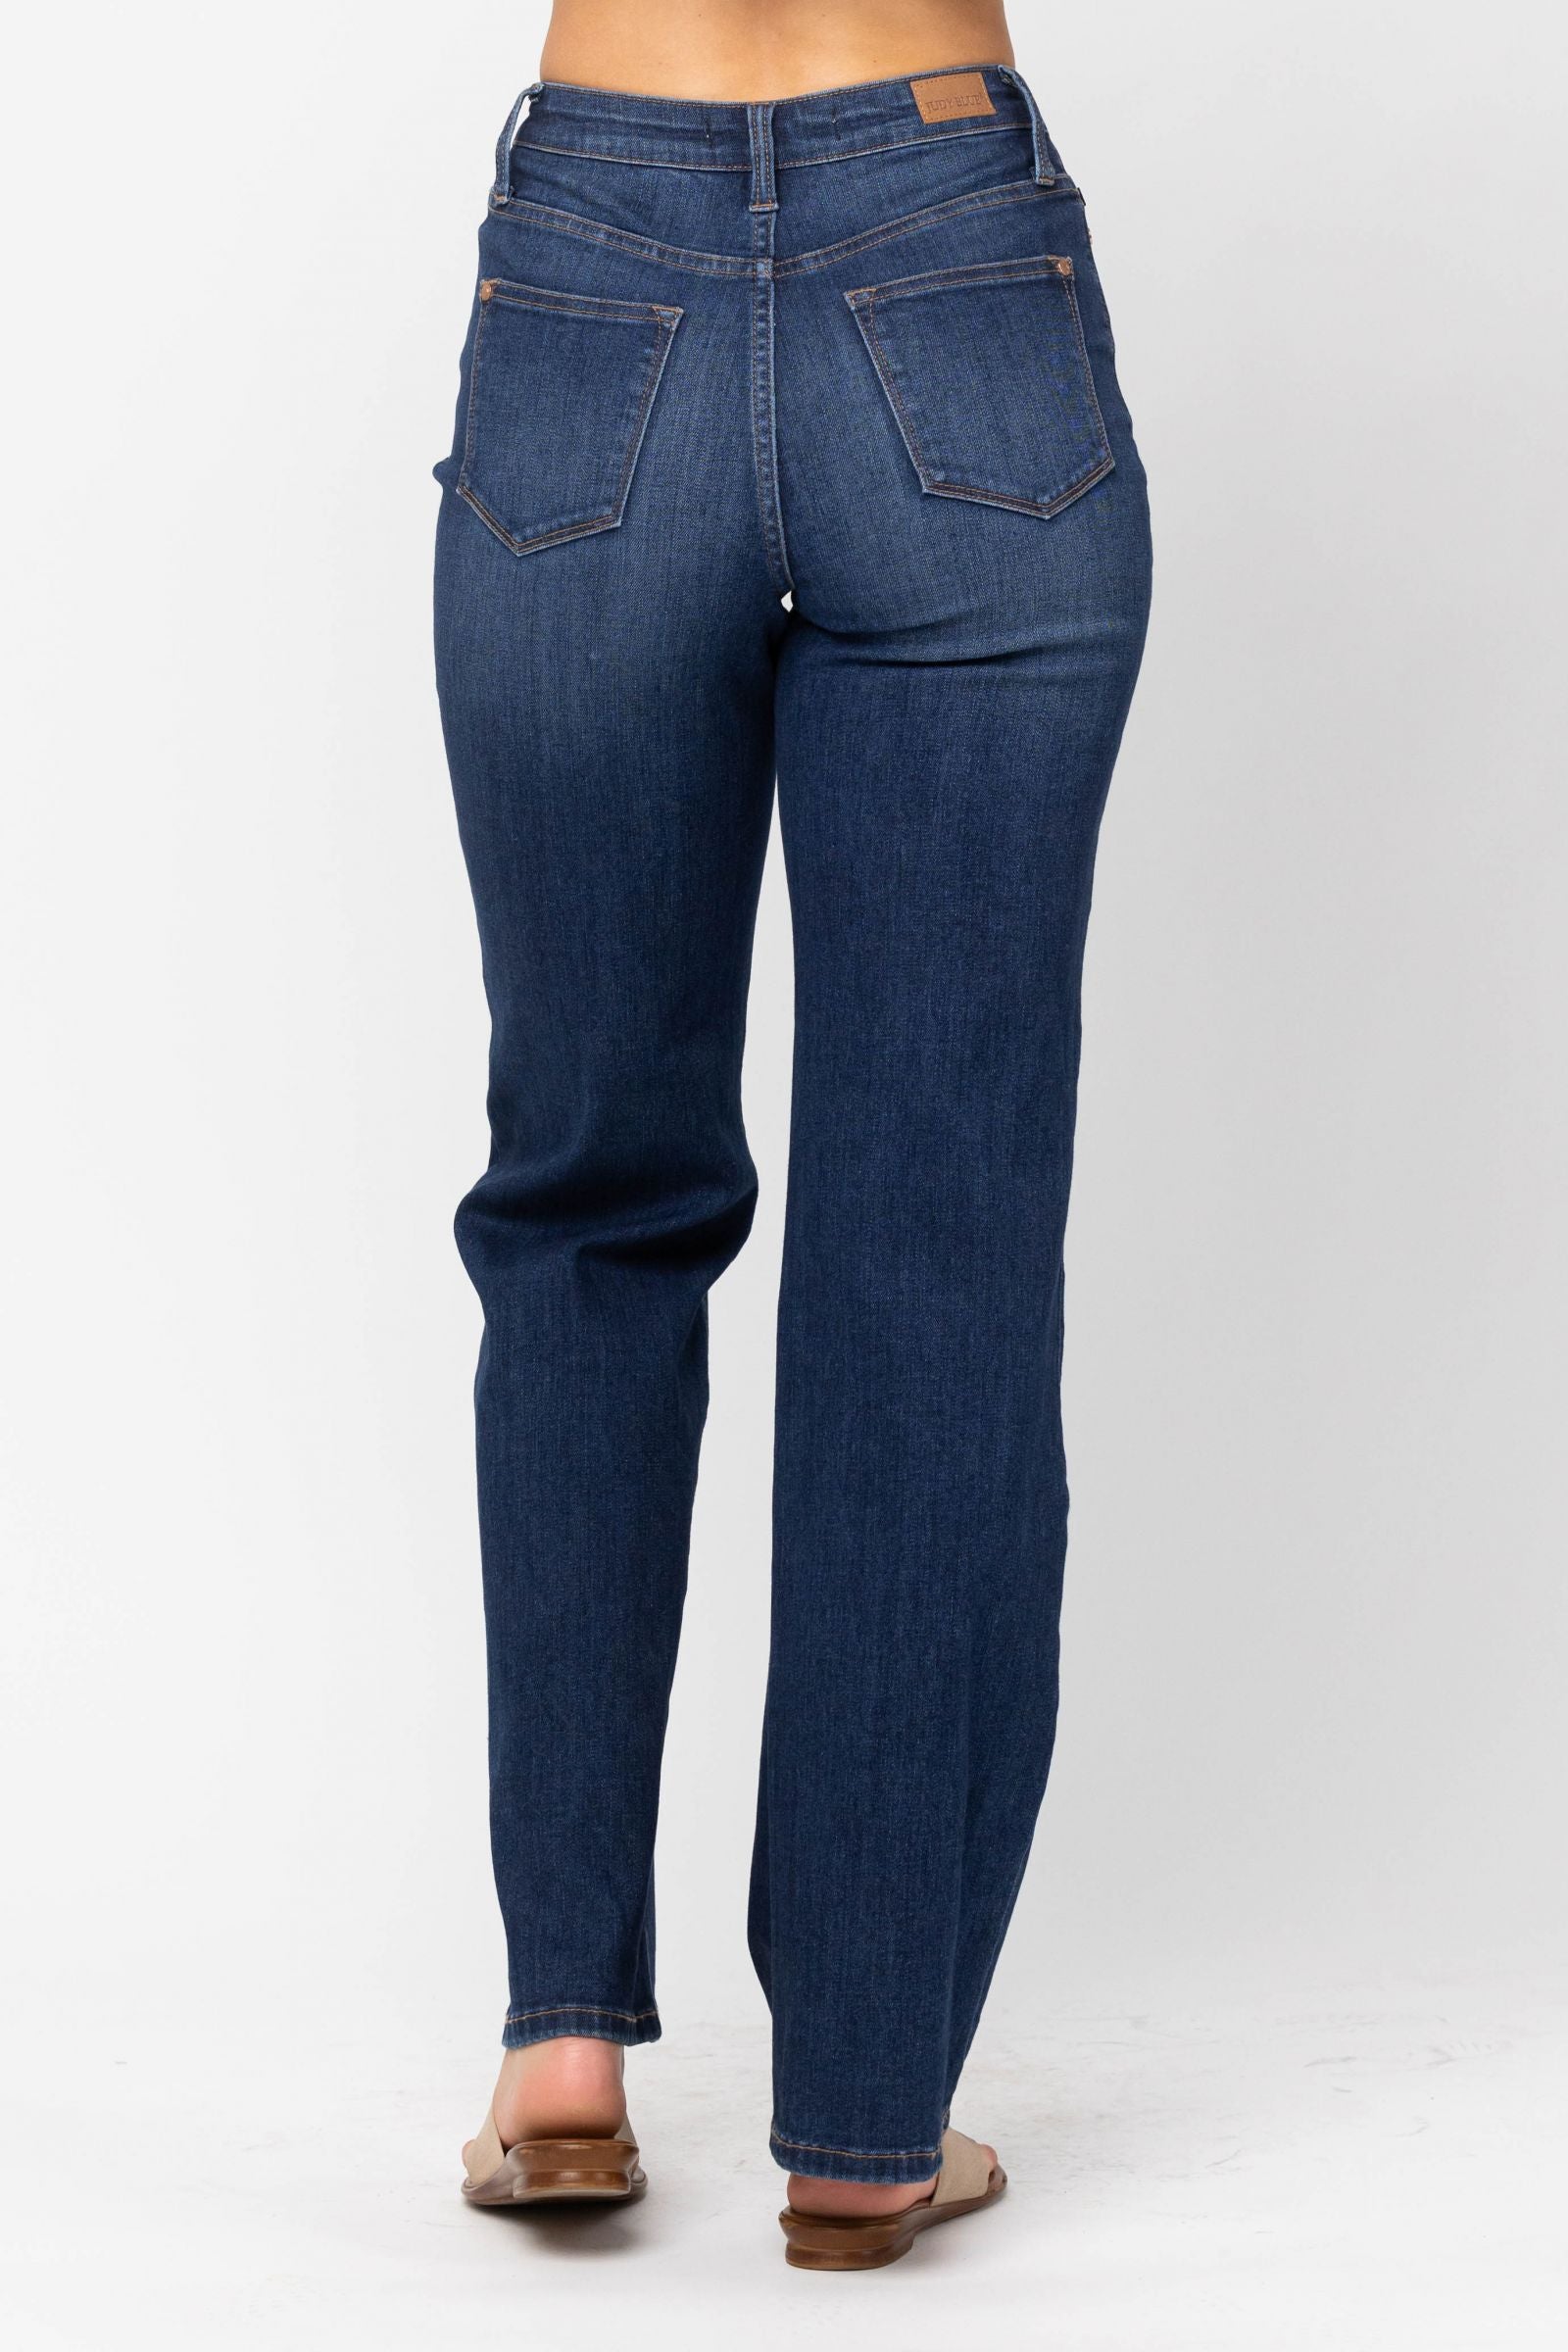 Judy Blue High Waisted Trouser Jean